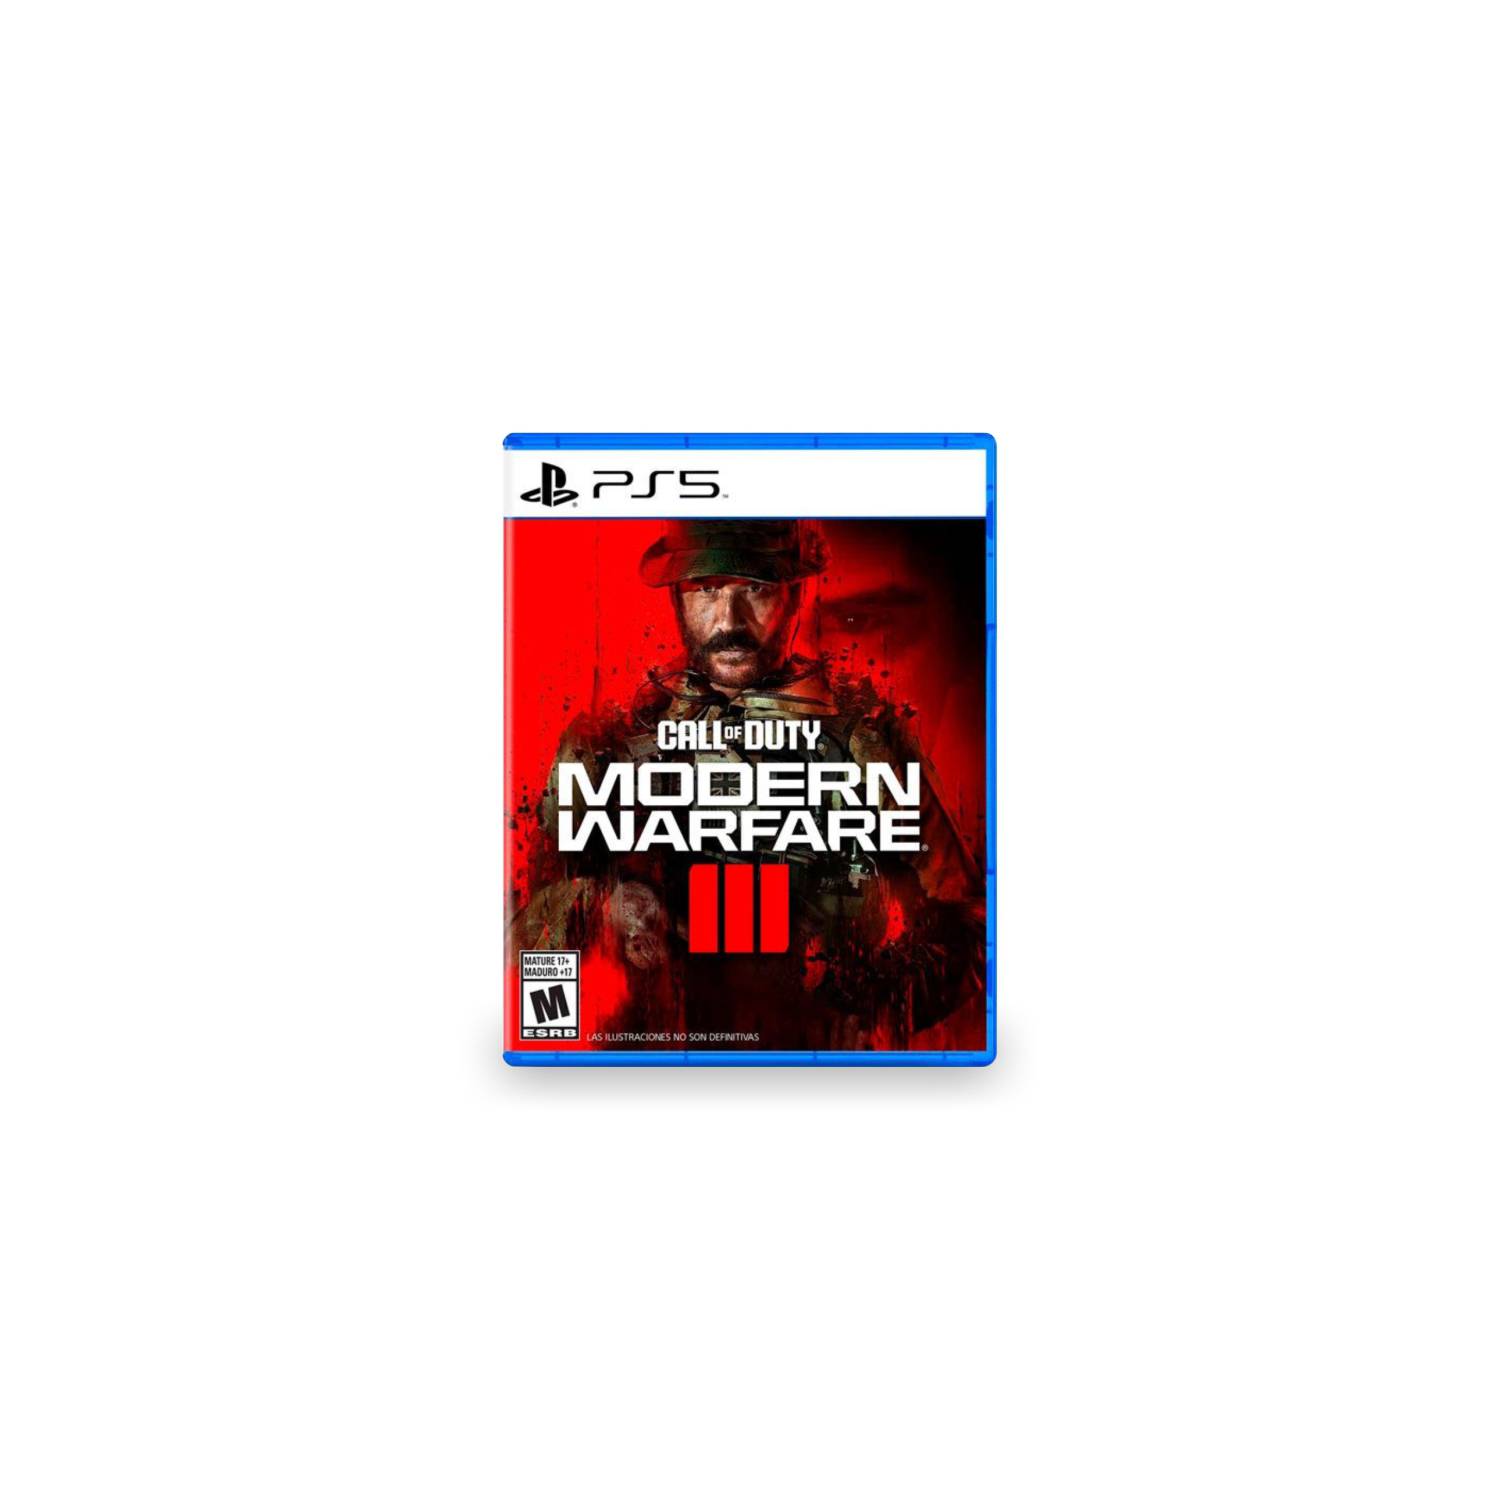 Red Dead Redemption 2 Ultimate Edition PS4, Juegos Digitales Honduras